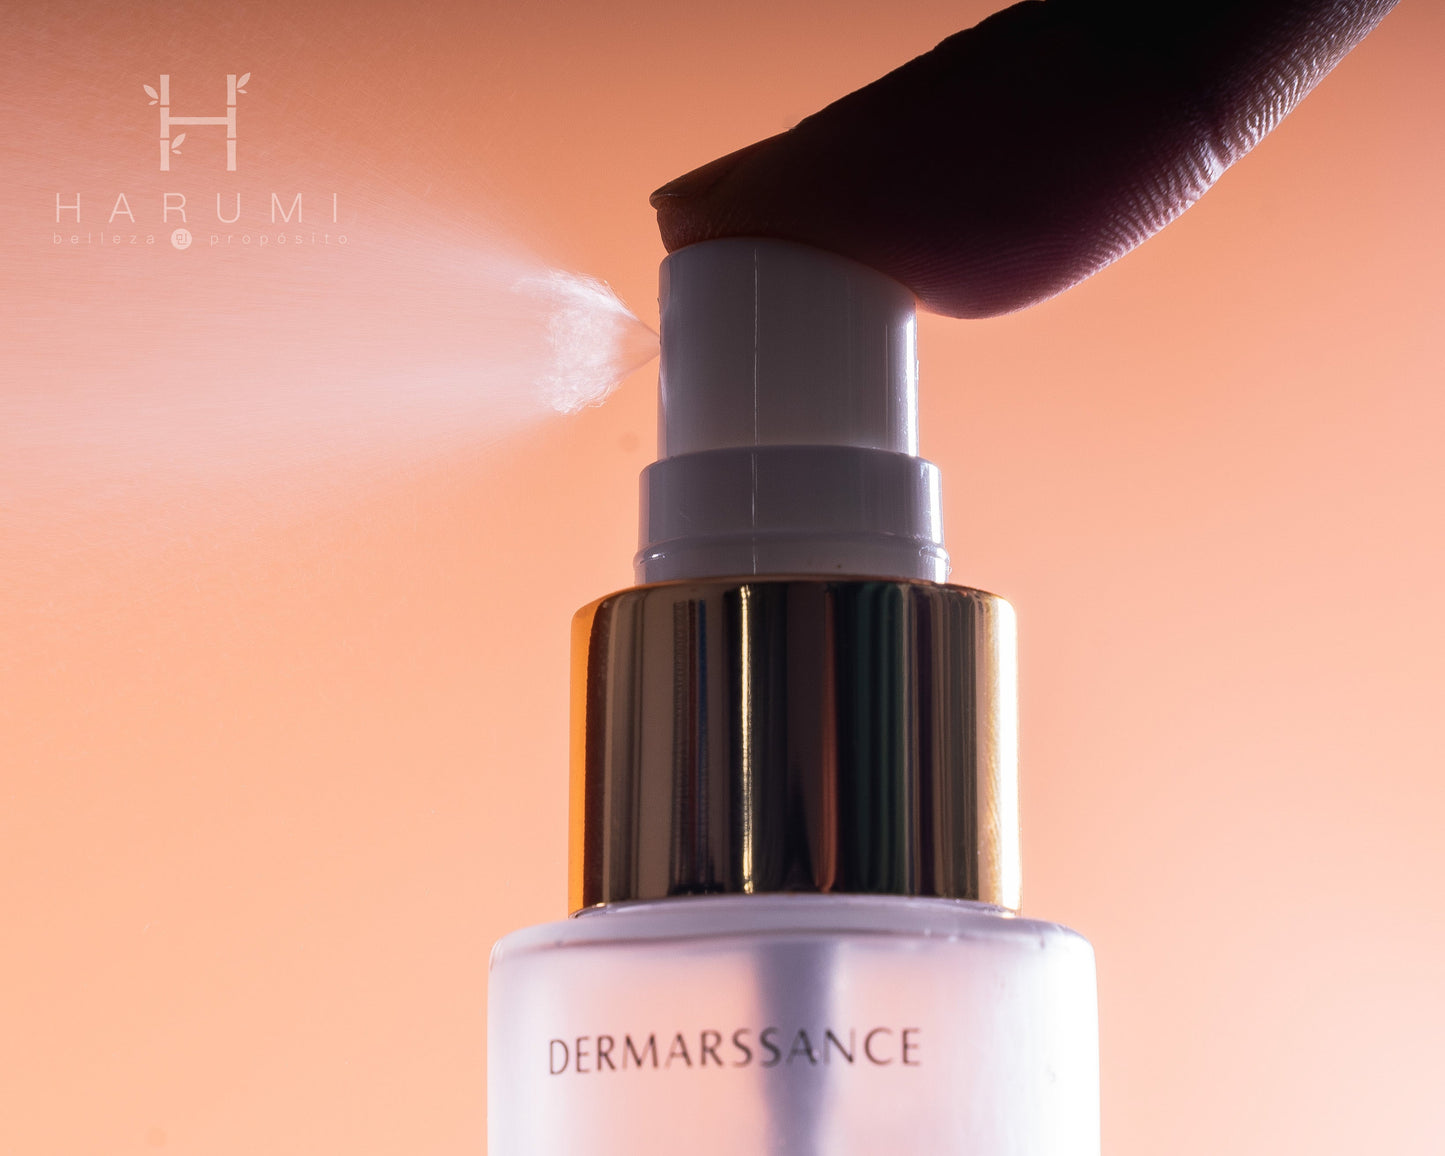 Dermarssance Highprime Collagen Ampoule Mist Skincare maquillaje productos de belleza coreanos en Colombia kbeauty